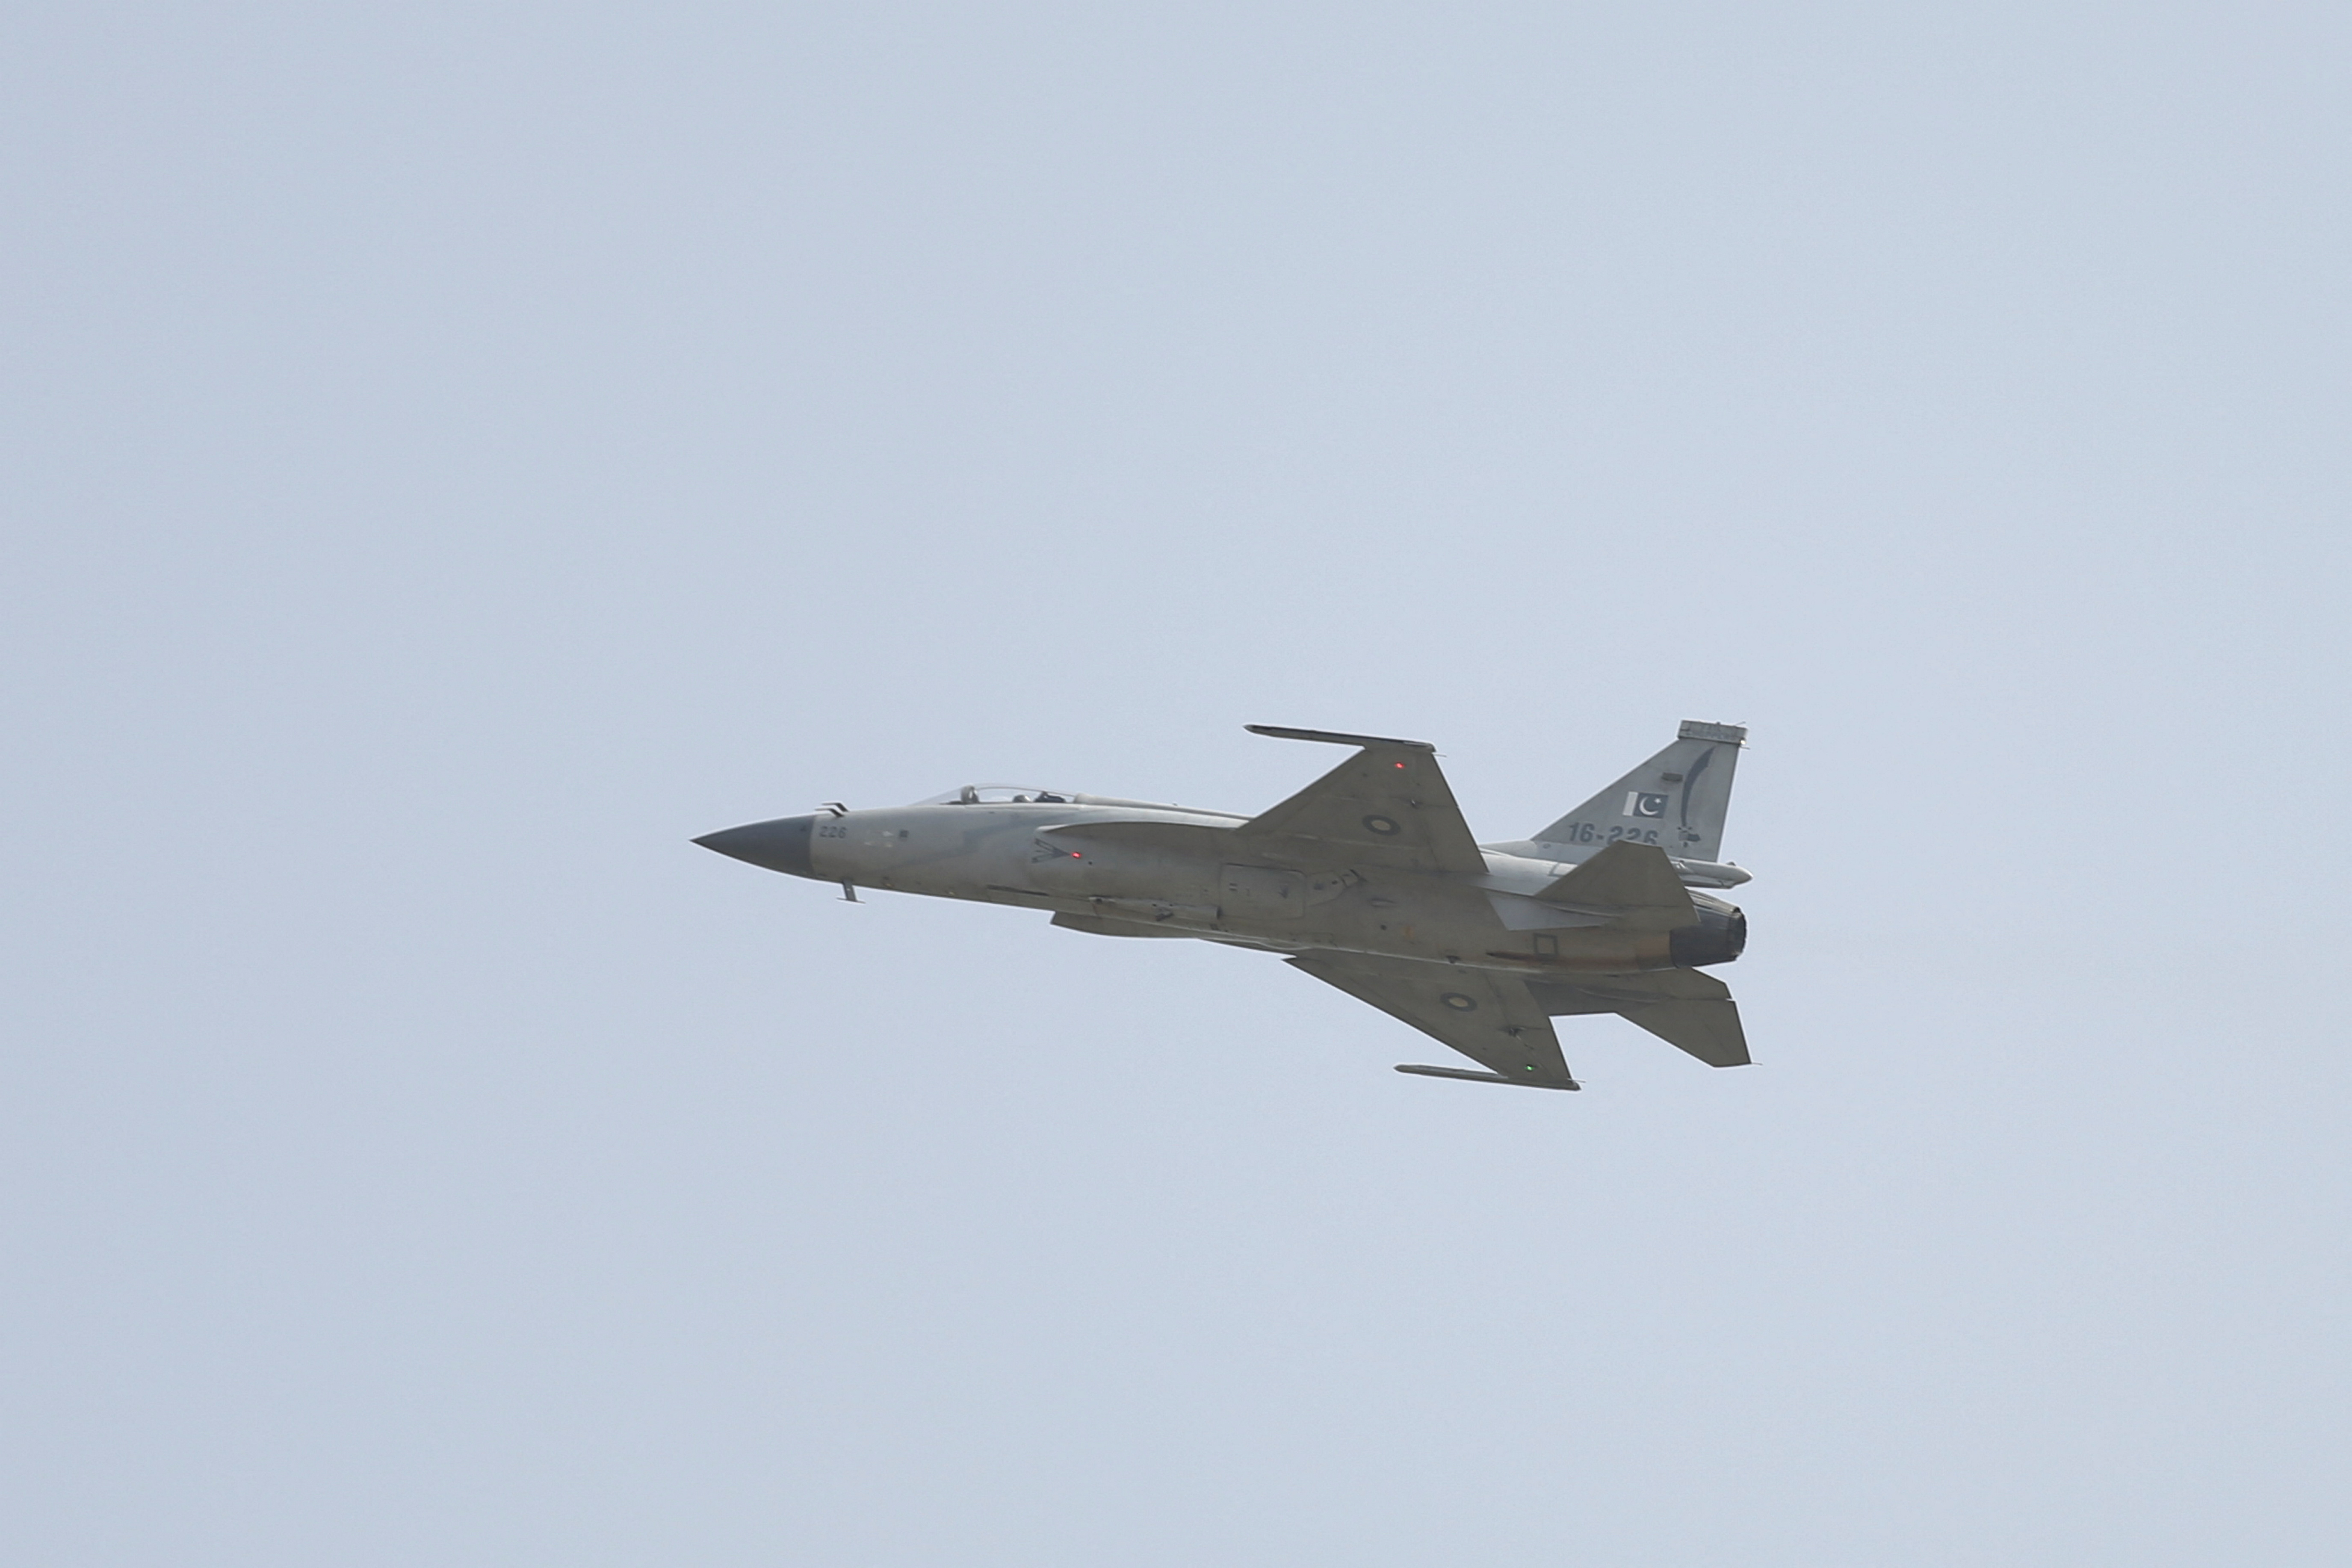 Oficiales superiores y pilotos de la Fuerza Aérea Argentina (FAA) probaron aviones de combate chinos. (REUTERS/Saiyna Bashir)